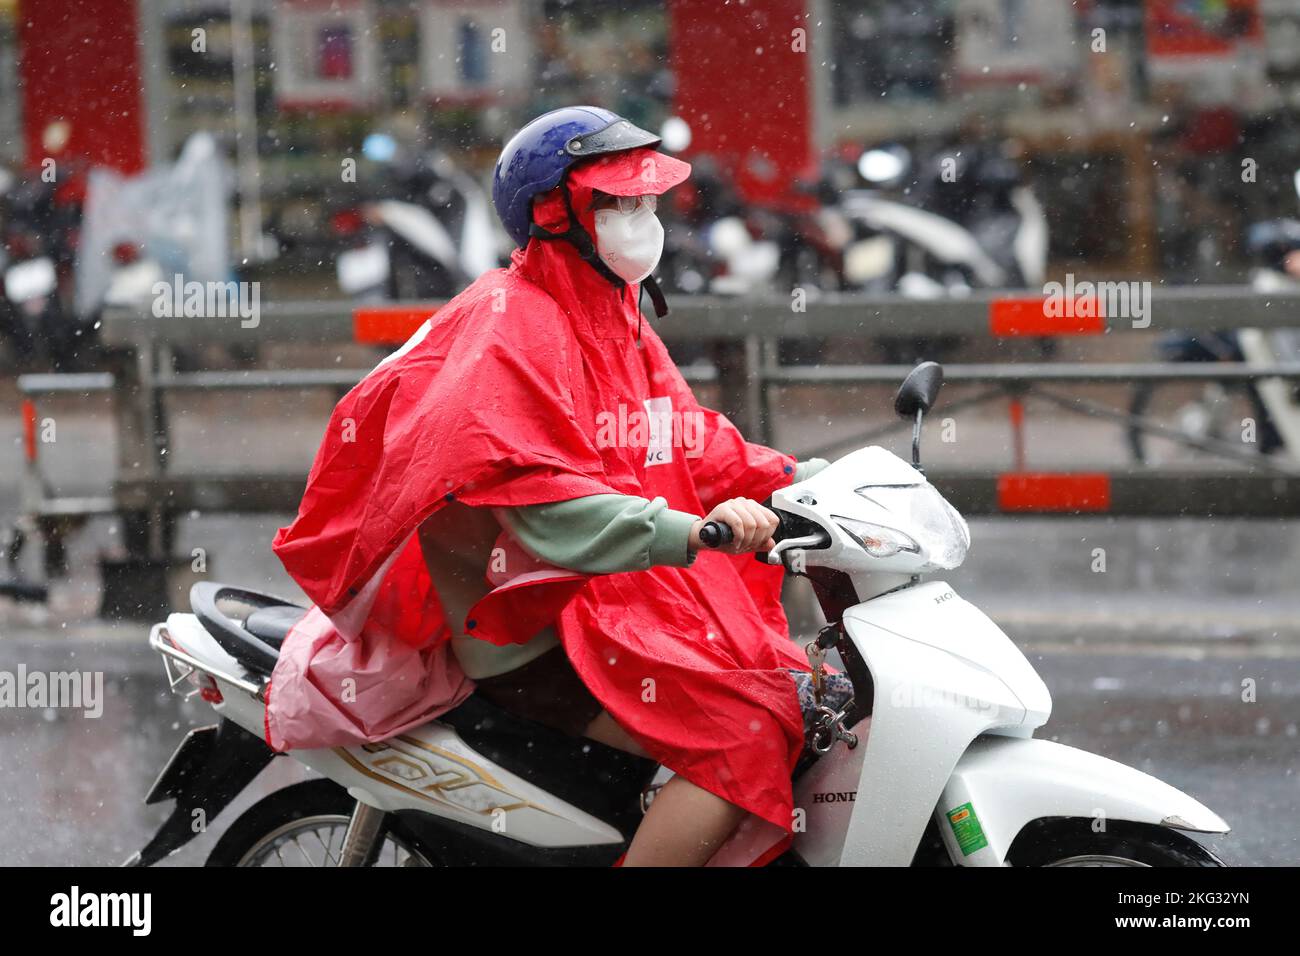 Frau mit Helm und Regenmantel fahren Motorrad bei starkem Regen, Wasser auf der Straße. Regenzeit in Saigon, Ho-Chi-Minh-Stadt. Vietnam. Stockfoto